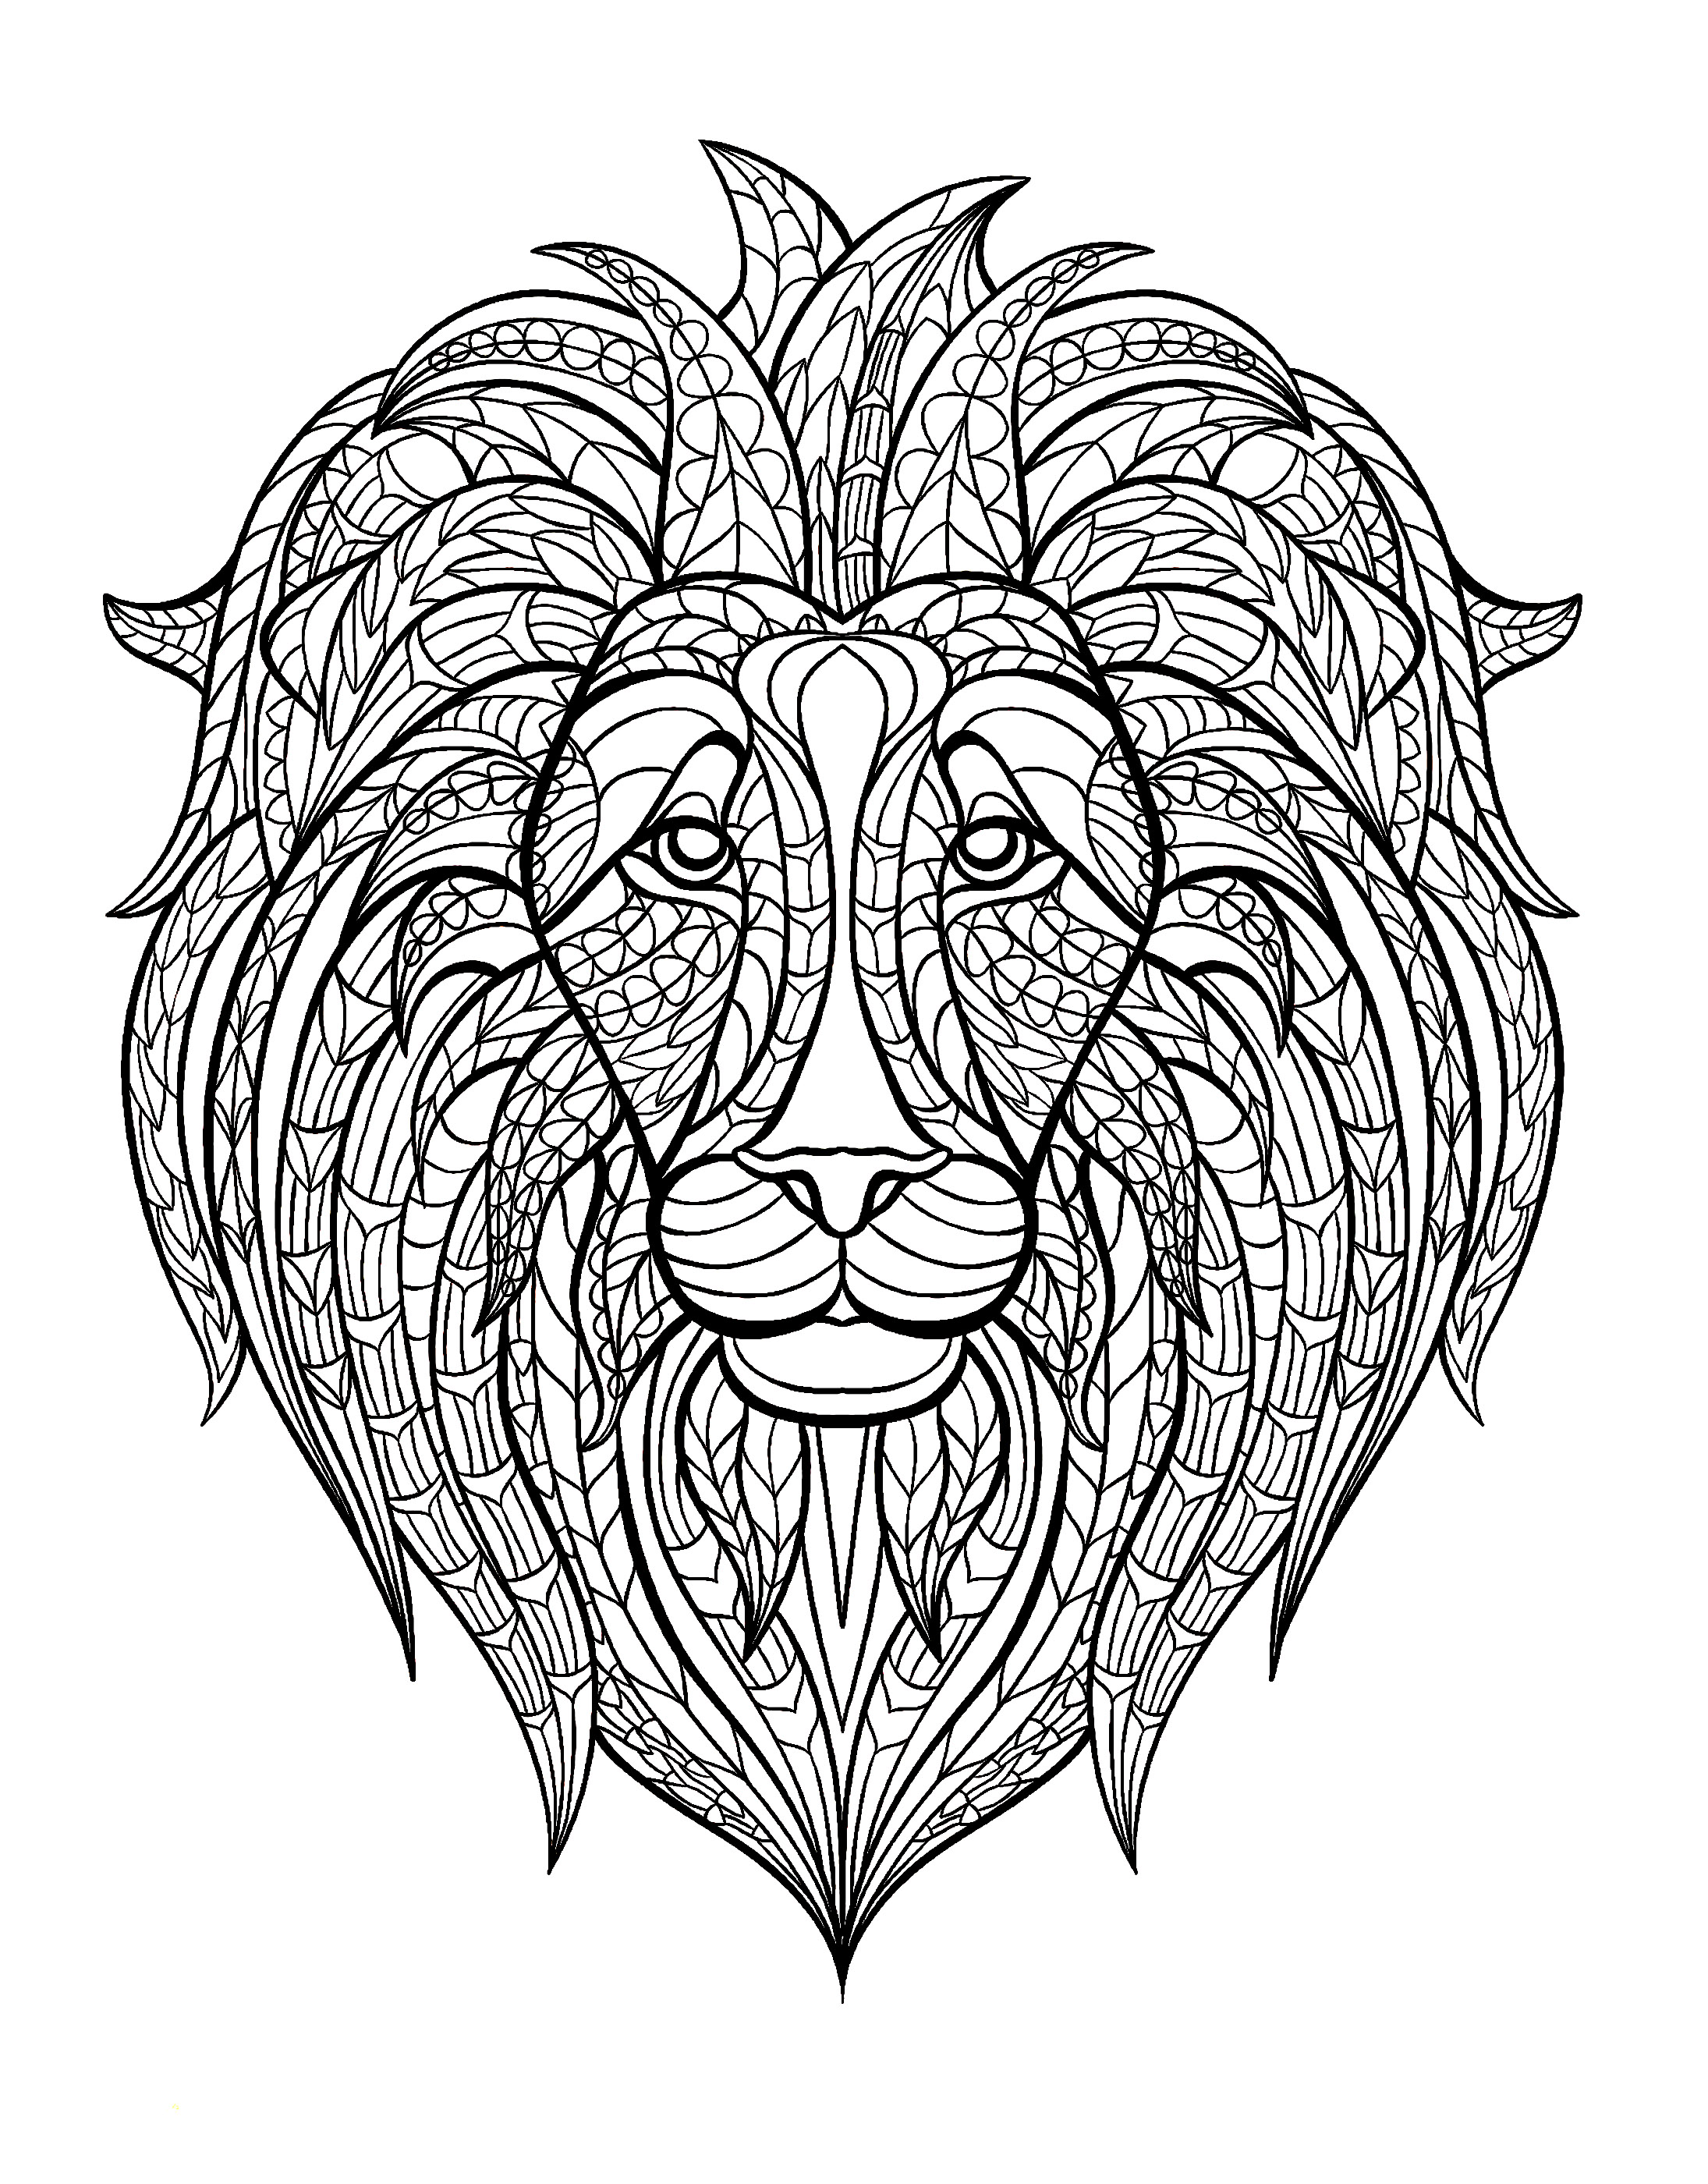 Disegni da colorare per adulti : Lions - 1